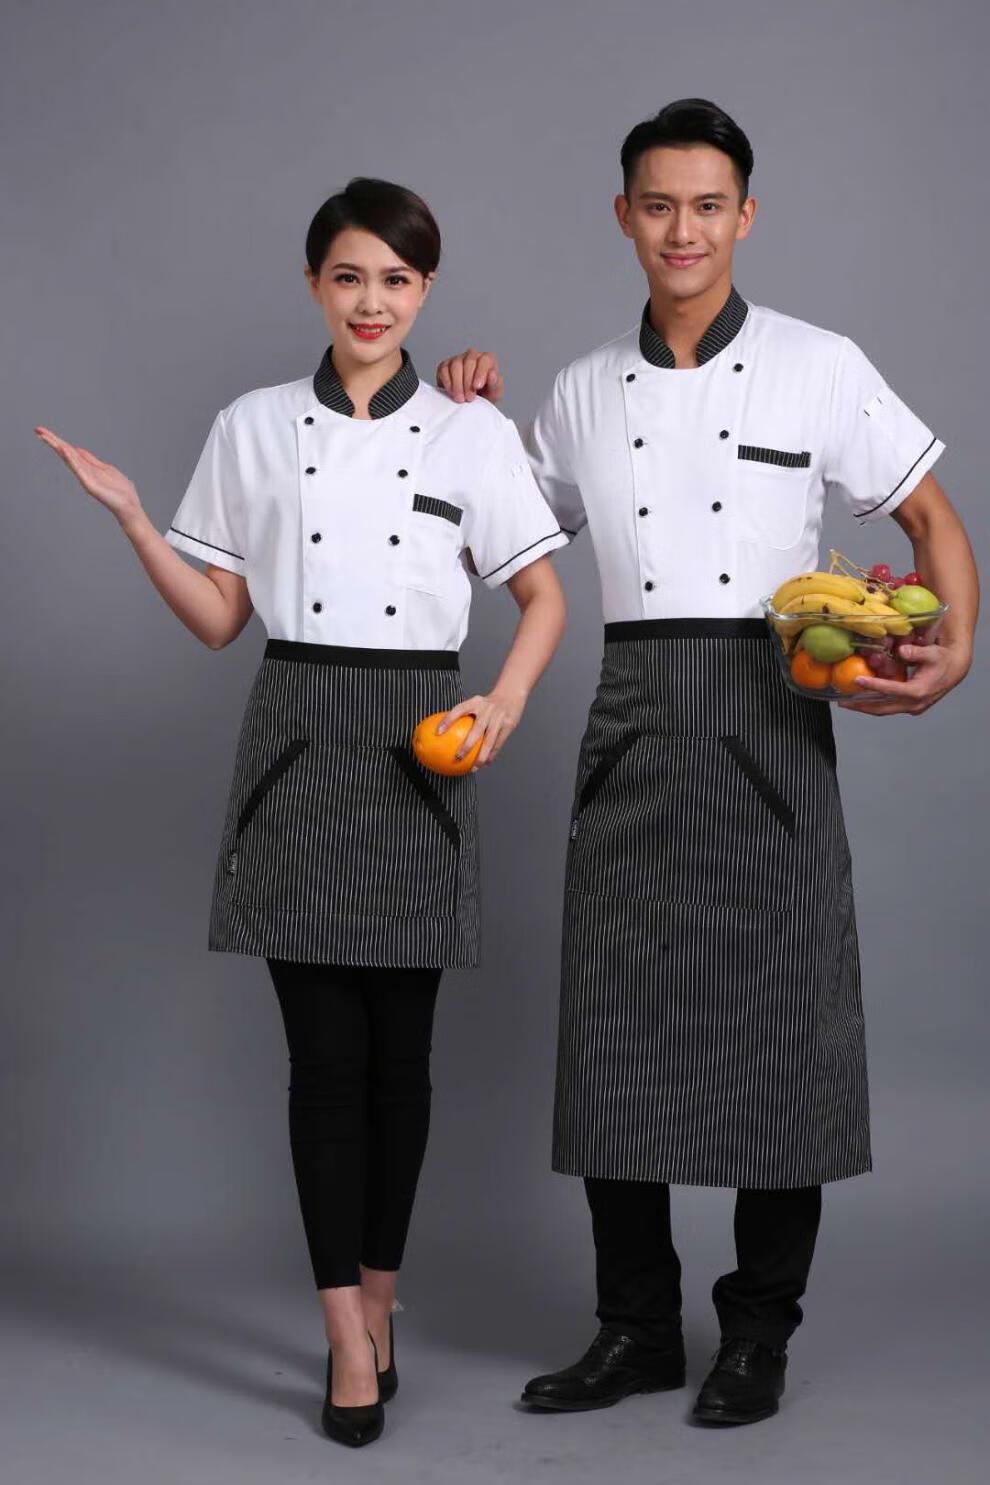 迪牧欧厨师服短袖黑色条纹领后背加网透气夏季时尚厨房帮工后厨均可